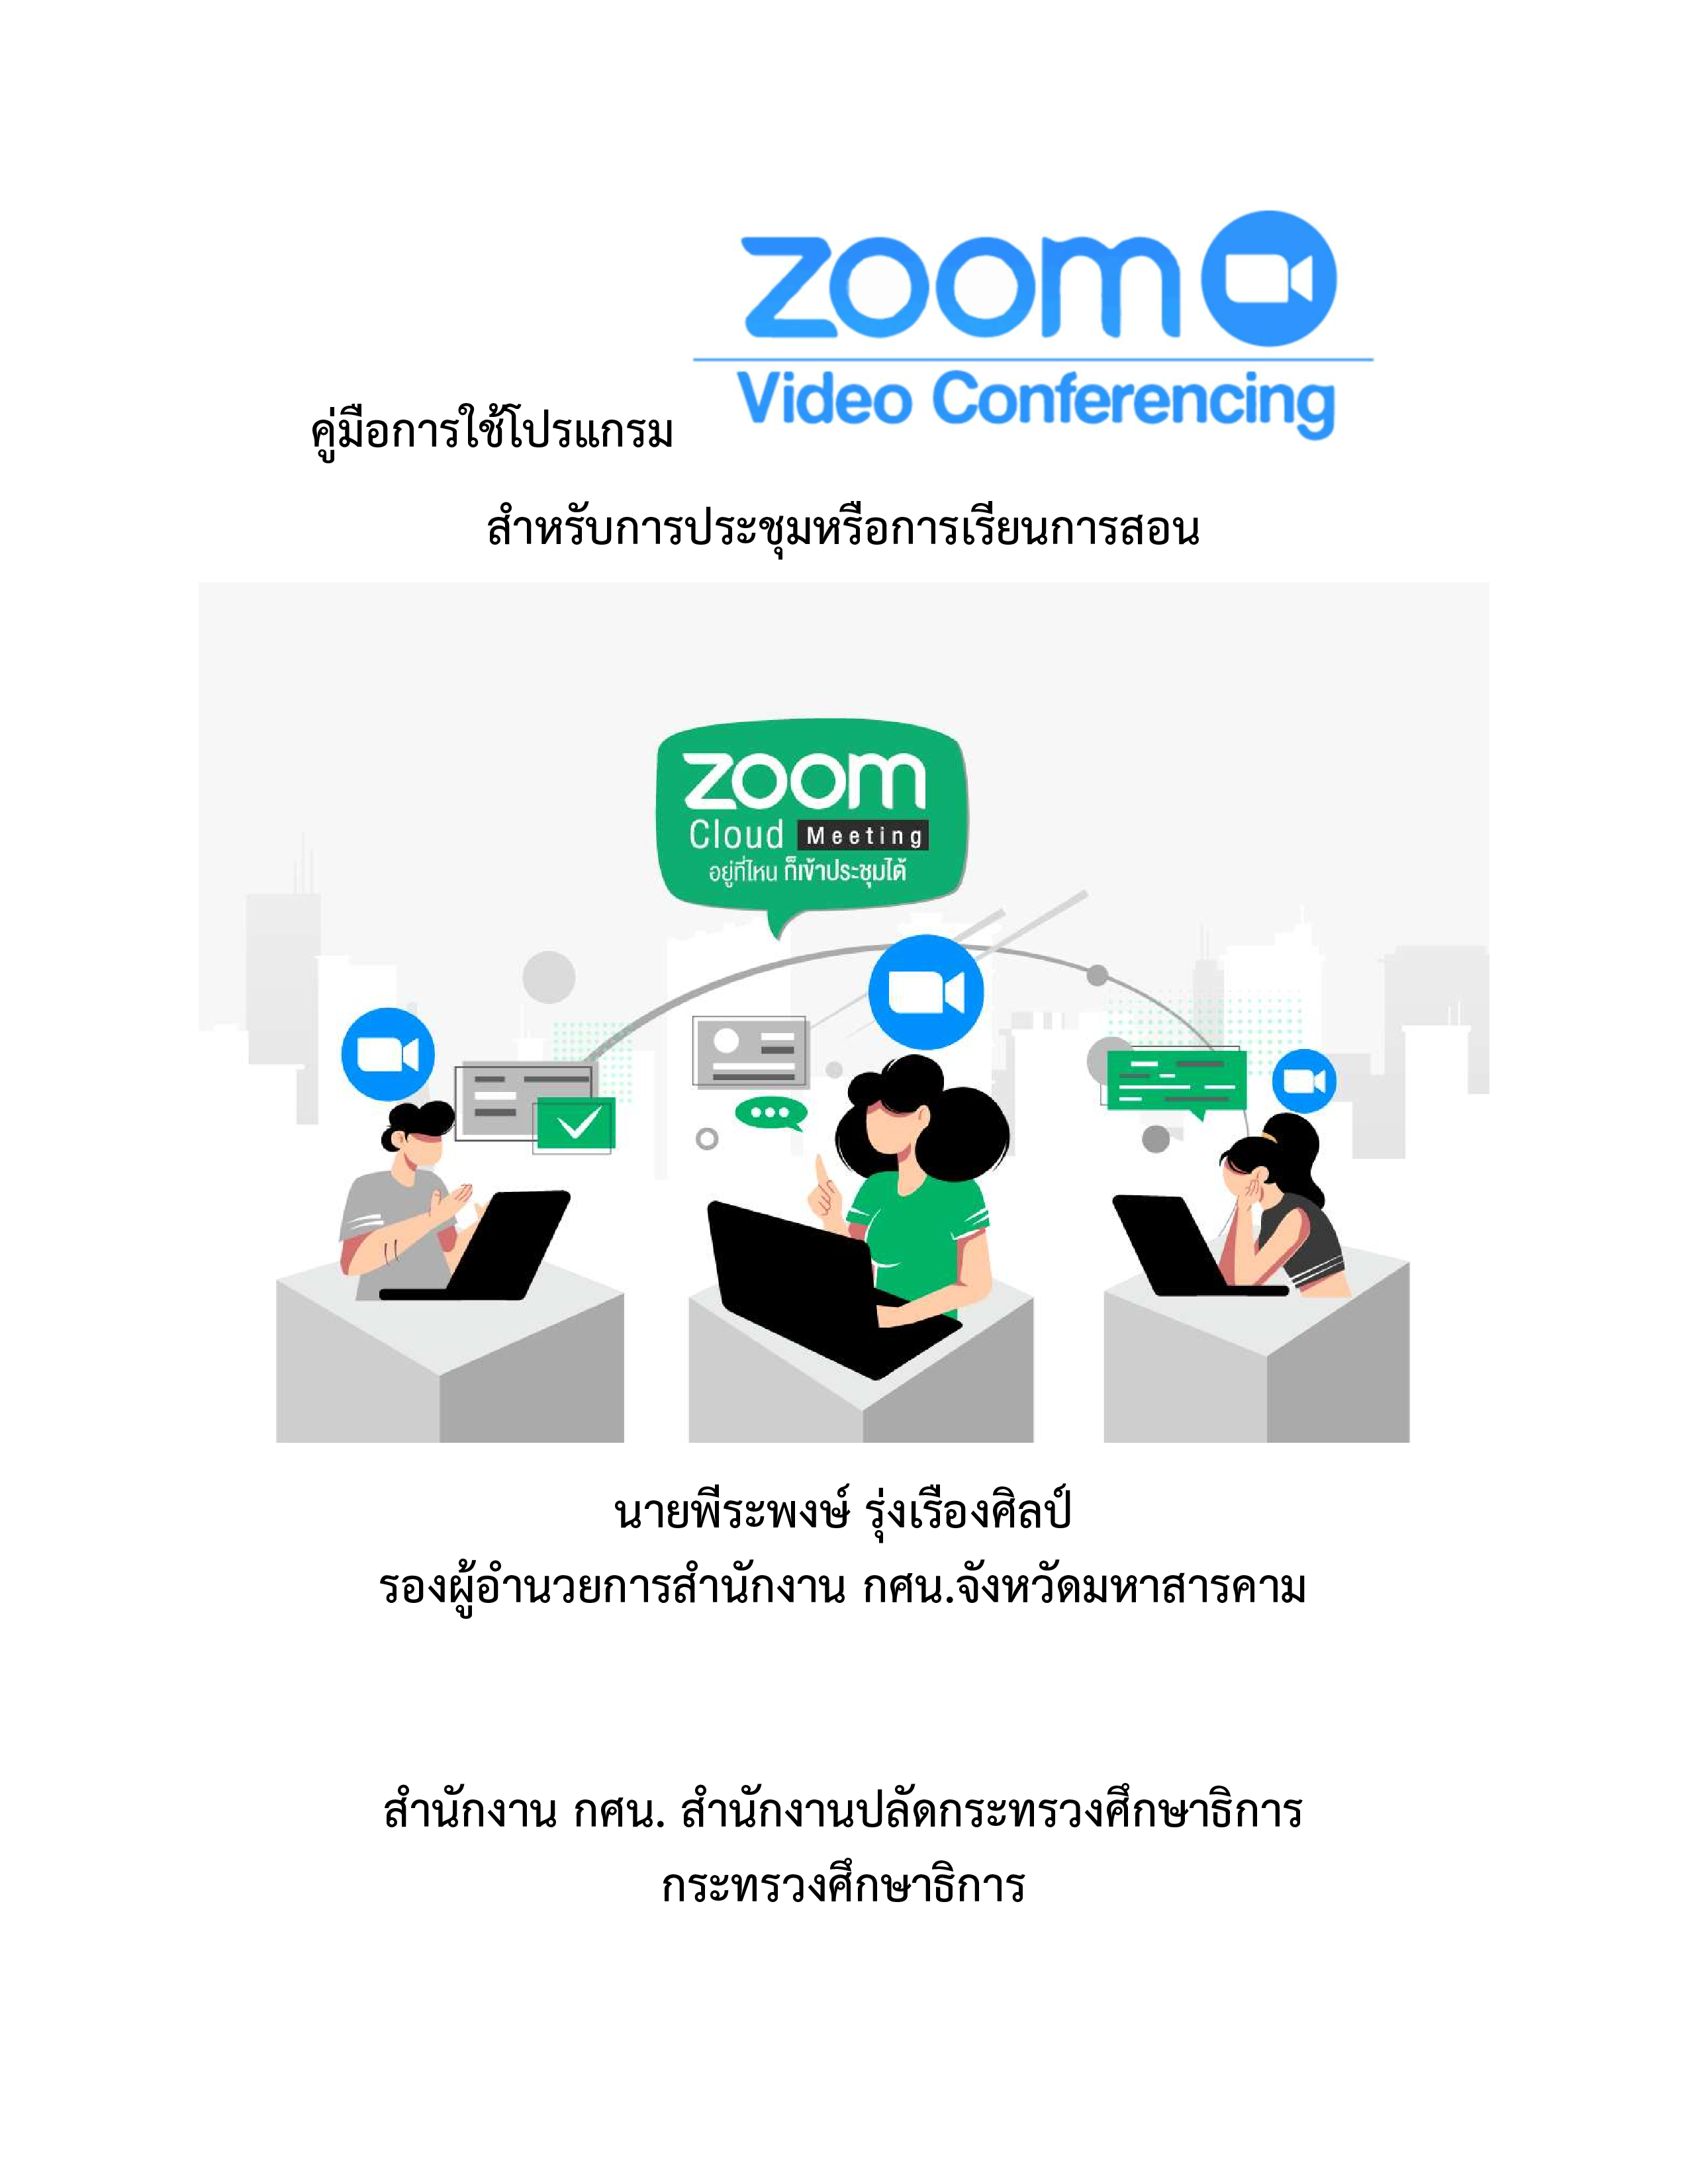 2.คู่มือการใช้โปรแกรม ZOOM Conferencing สำหรับการประชุมหรือการเรียนการสอน